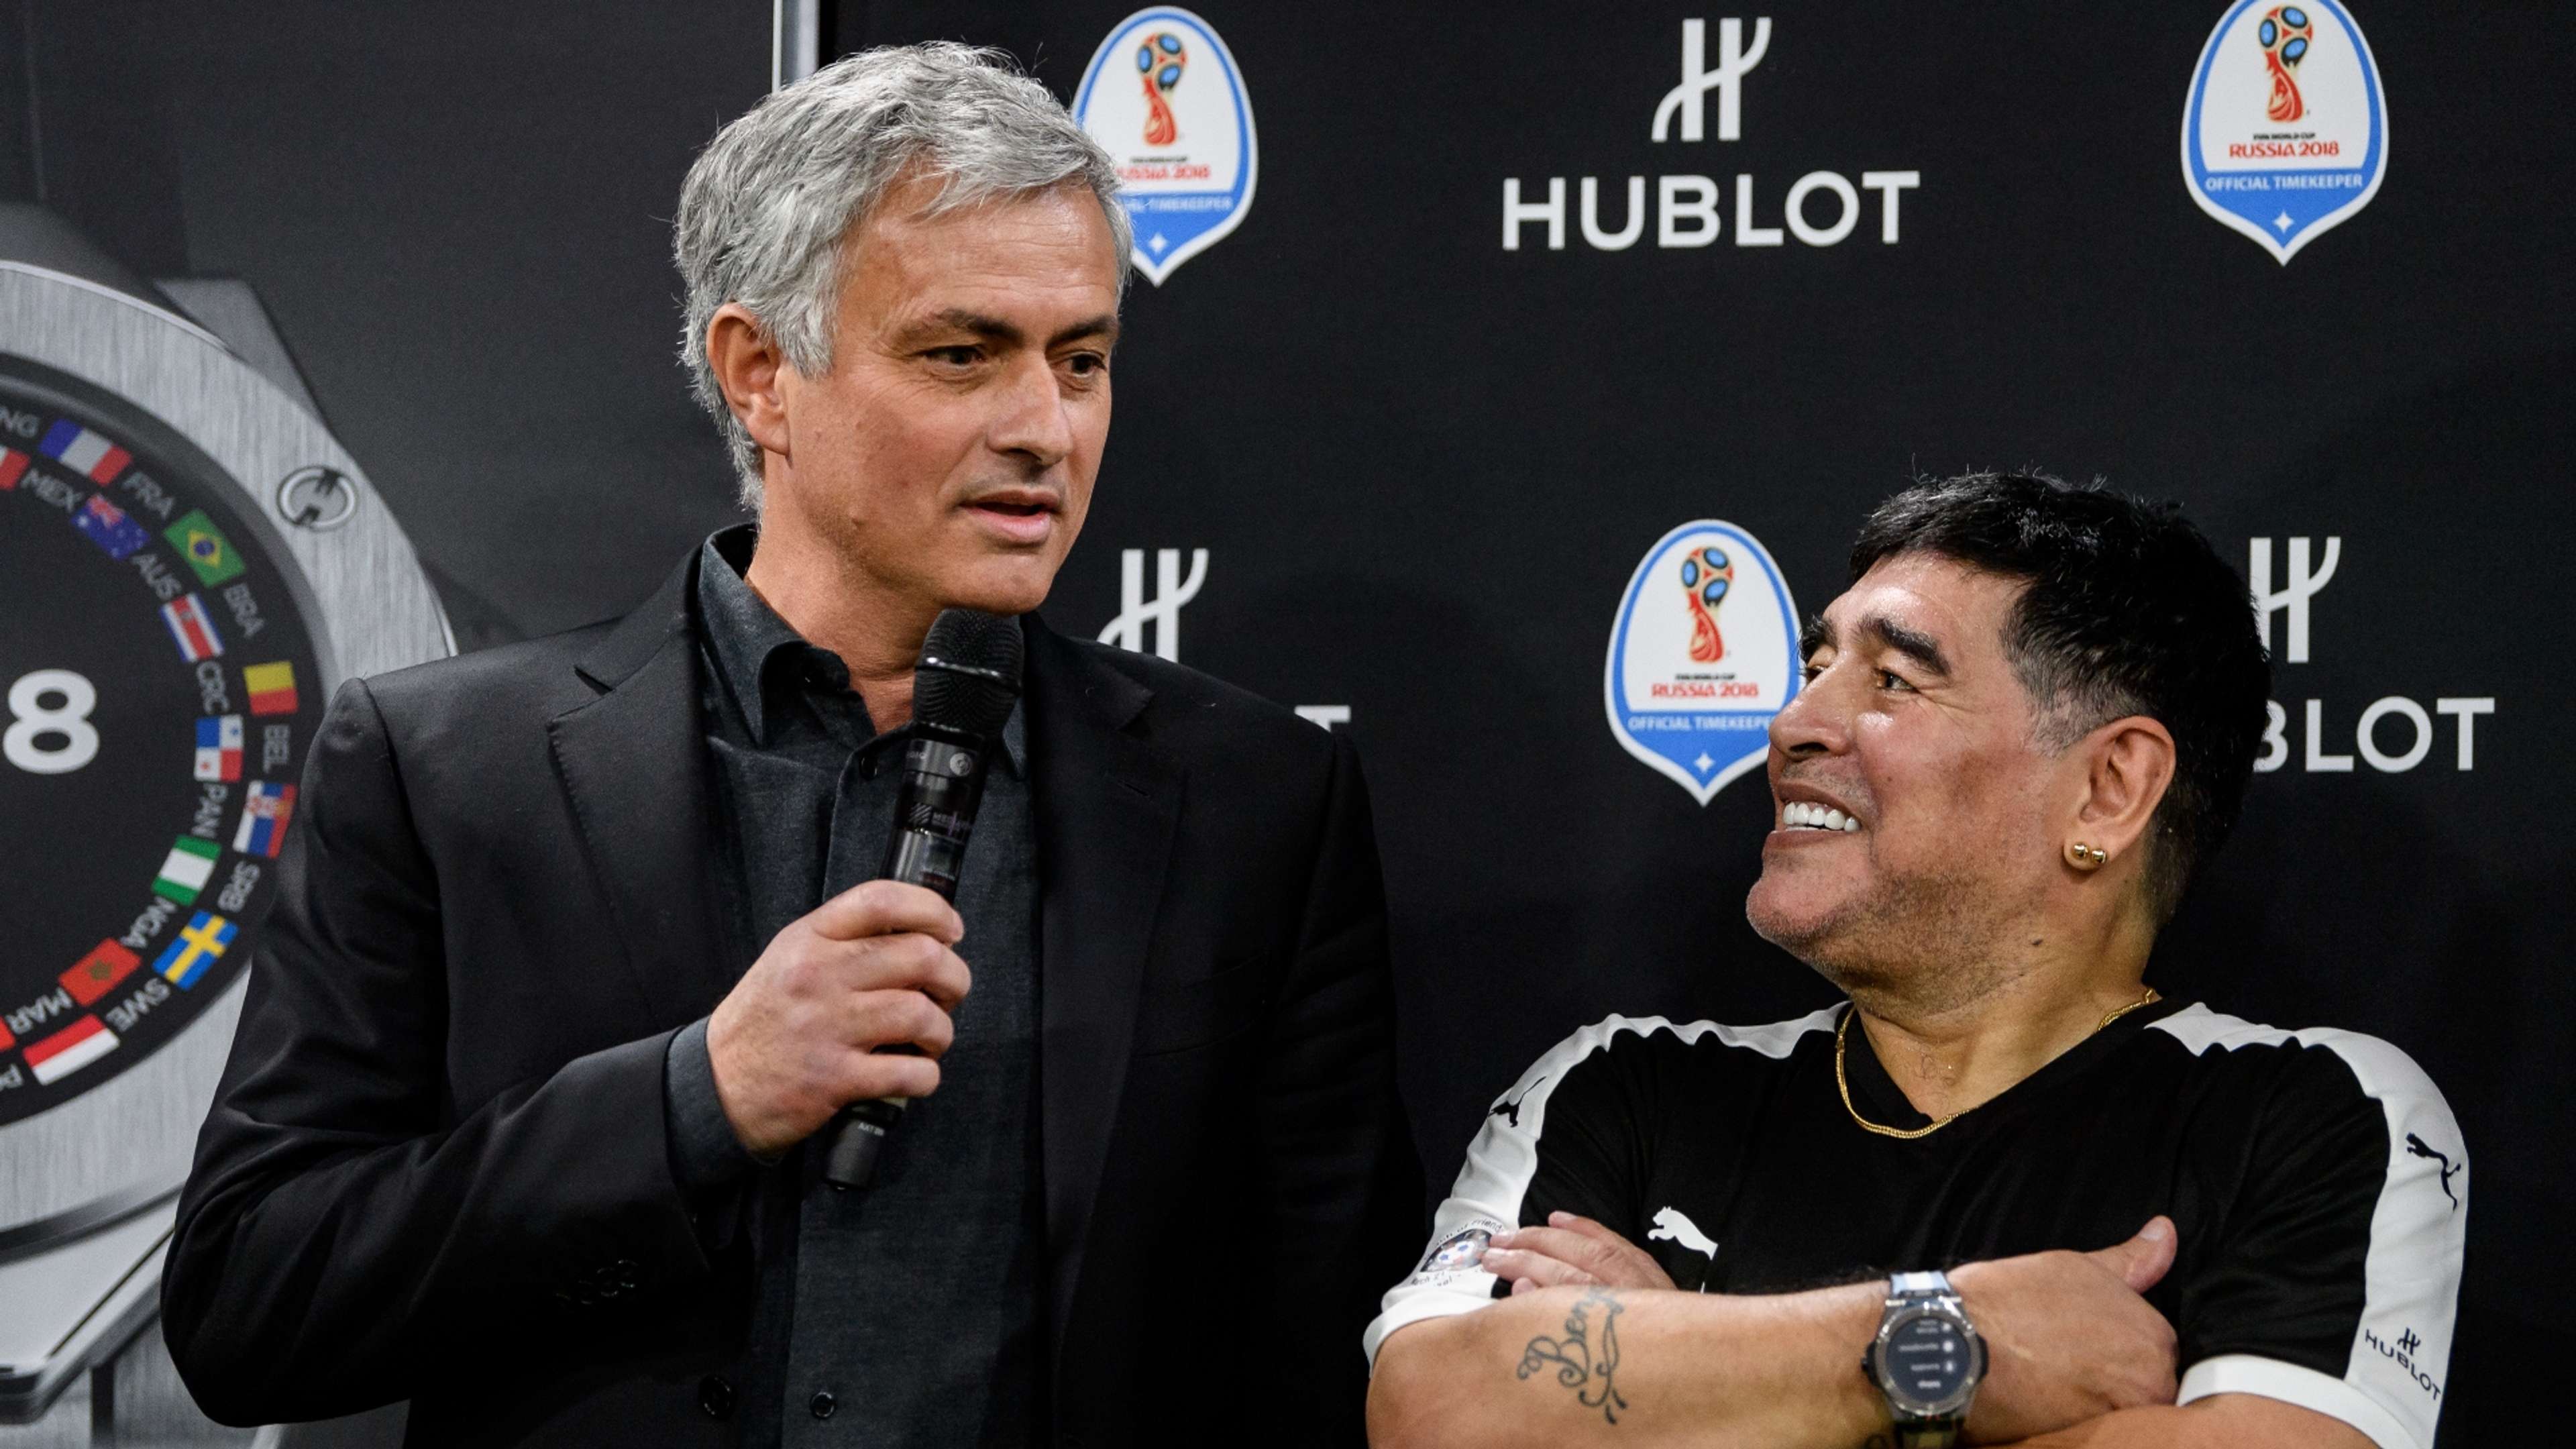 Jose Mourinho/Diego Maradona